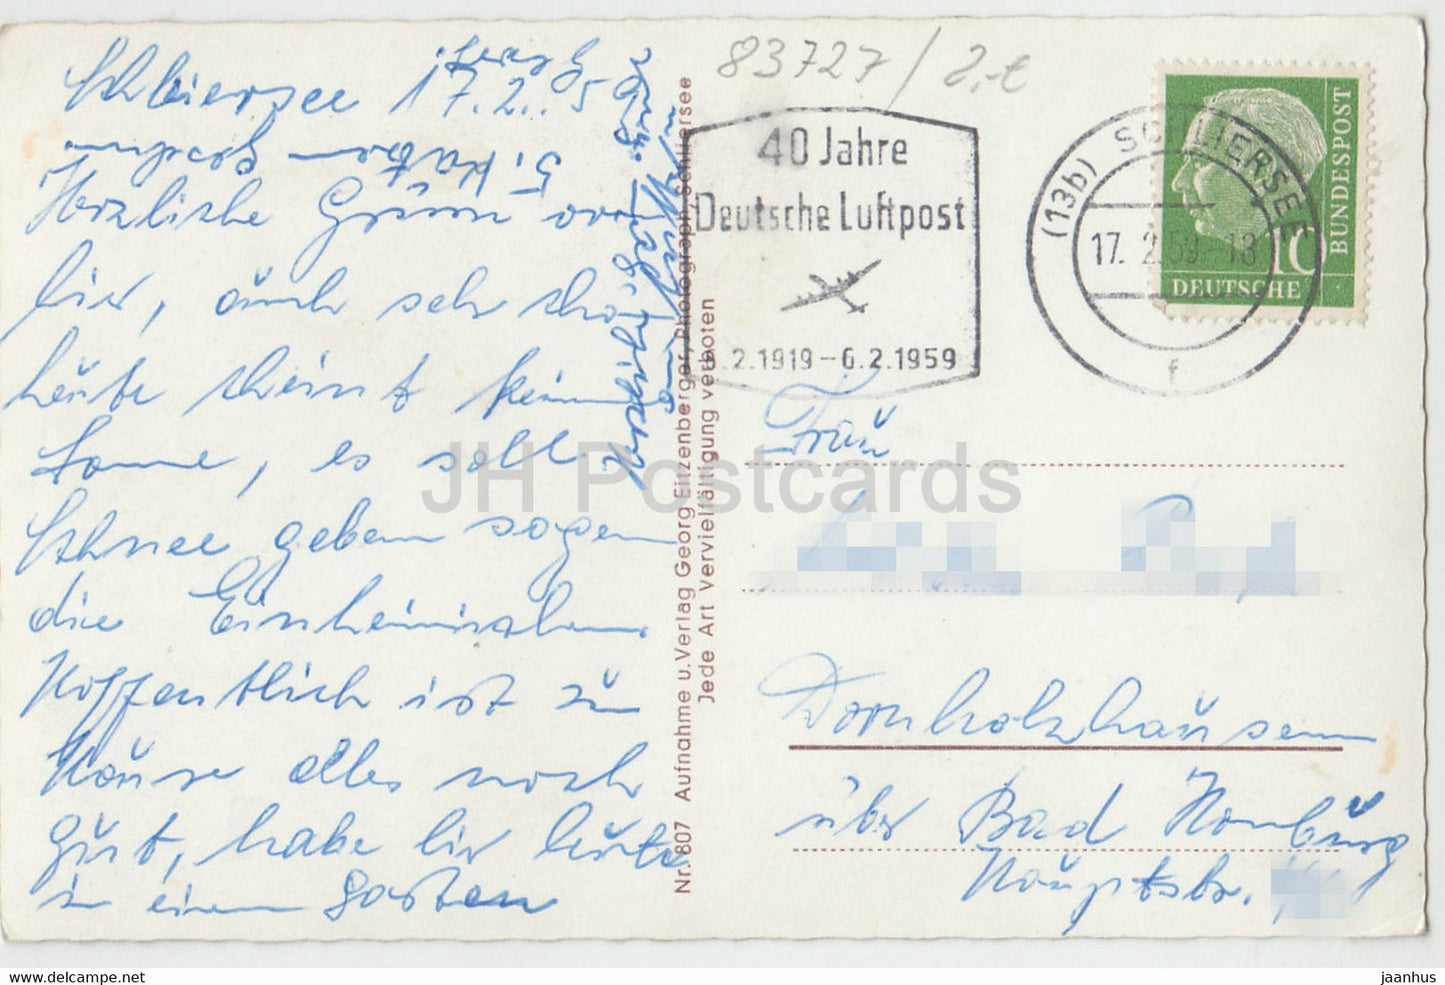 Schliersee mit Jagerkamp u Brecherspitze - 40 Jahre Deutsche Luftpost - 807 - 1959 - Deutschland - gebraucht